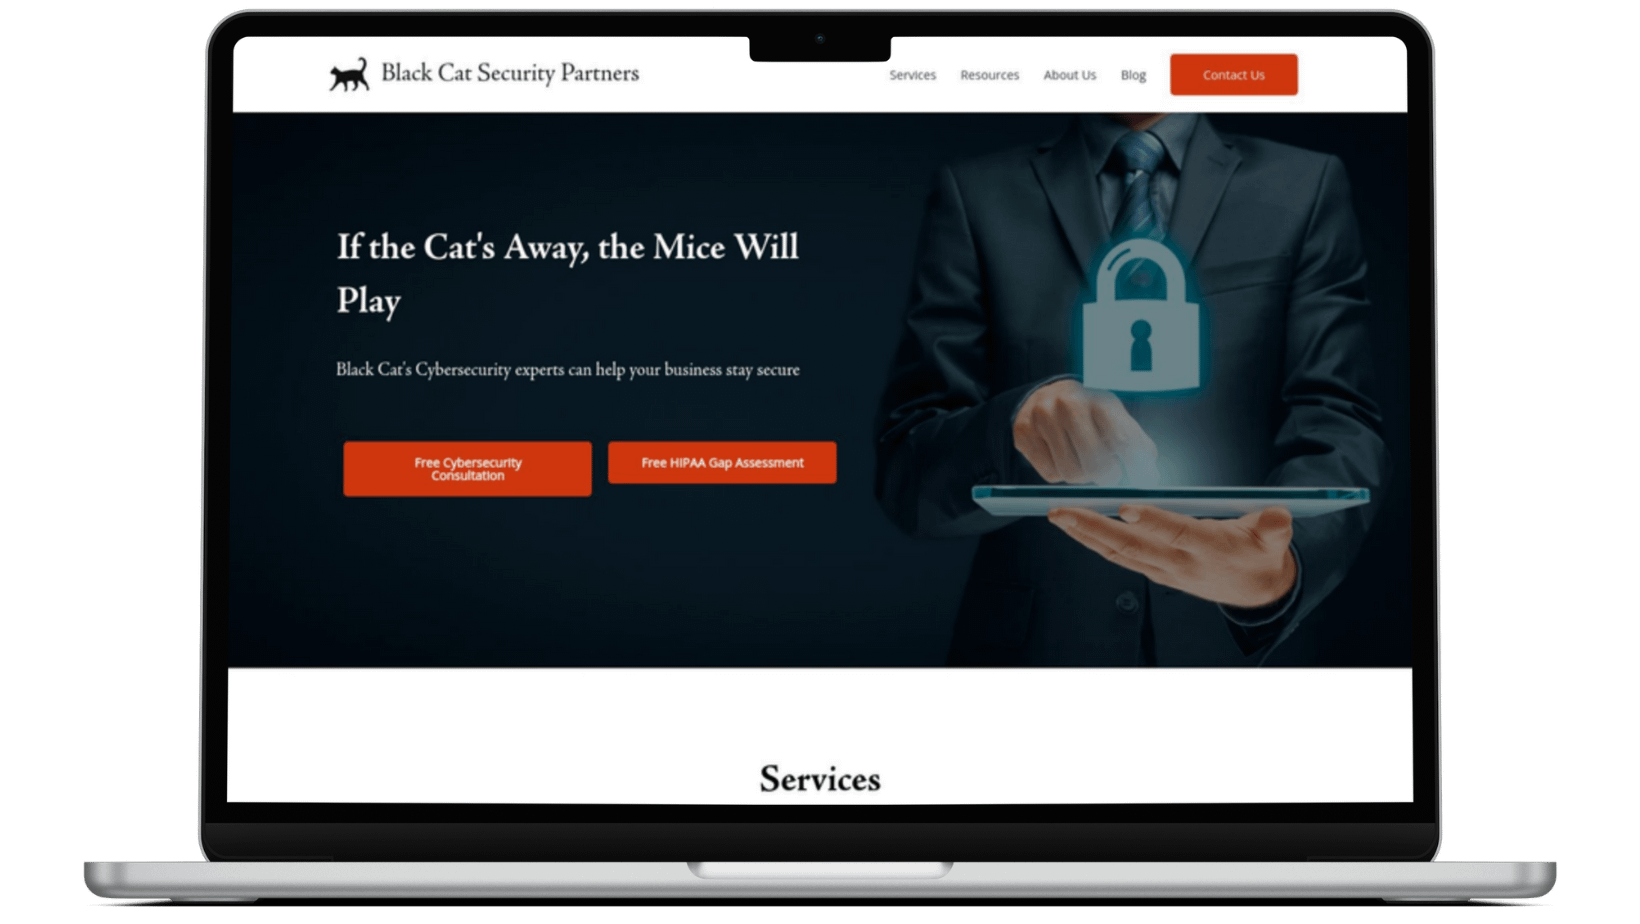 Macbook showing website Black Cat Cybersecurity Partners